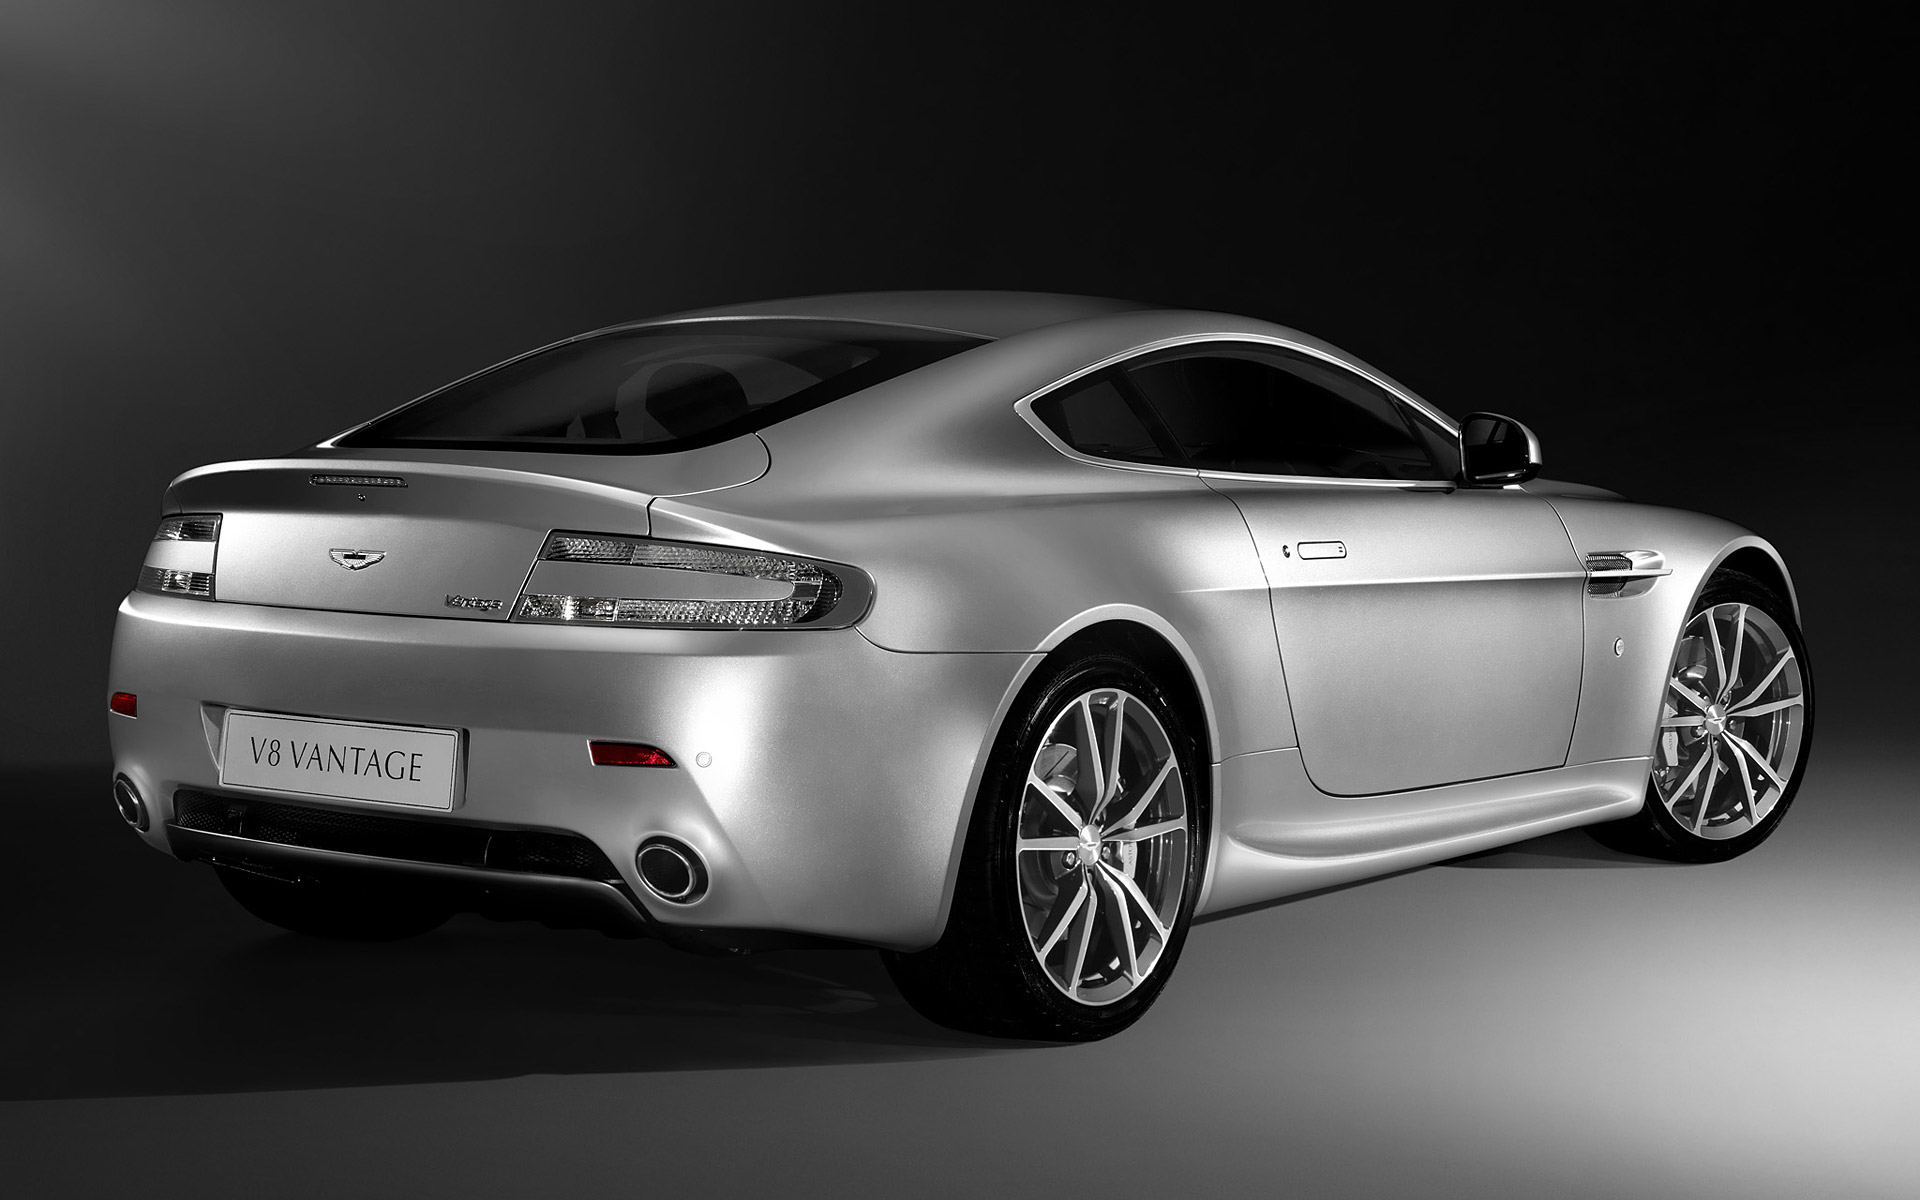  2010 Aston Martin V8 Vantage Wallpaper.